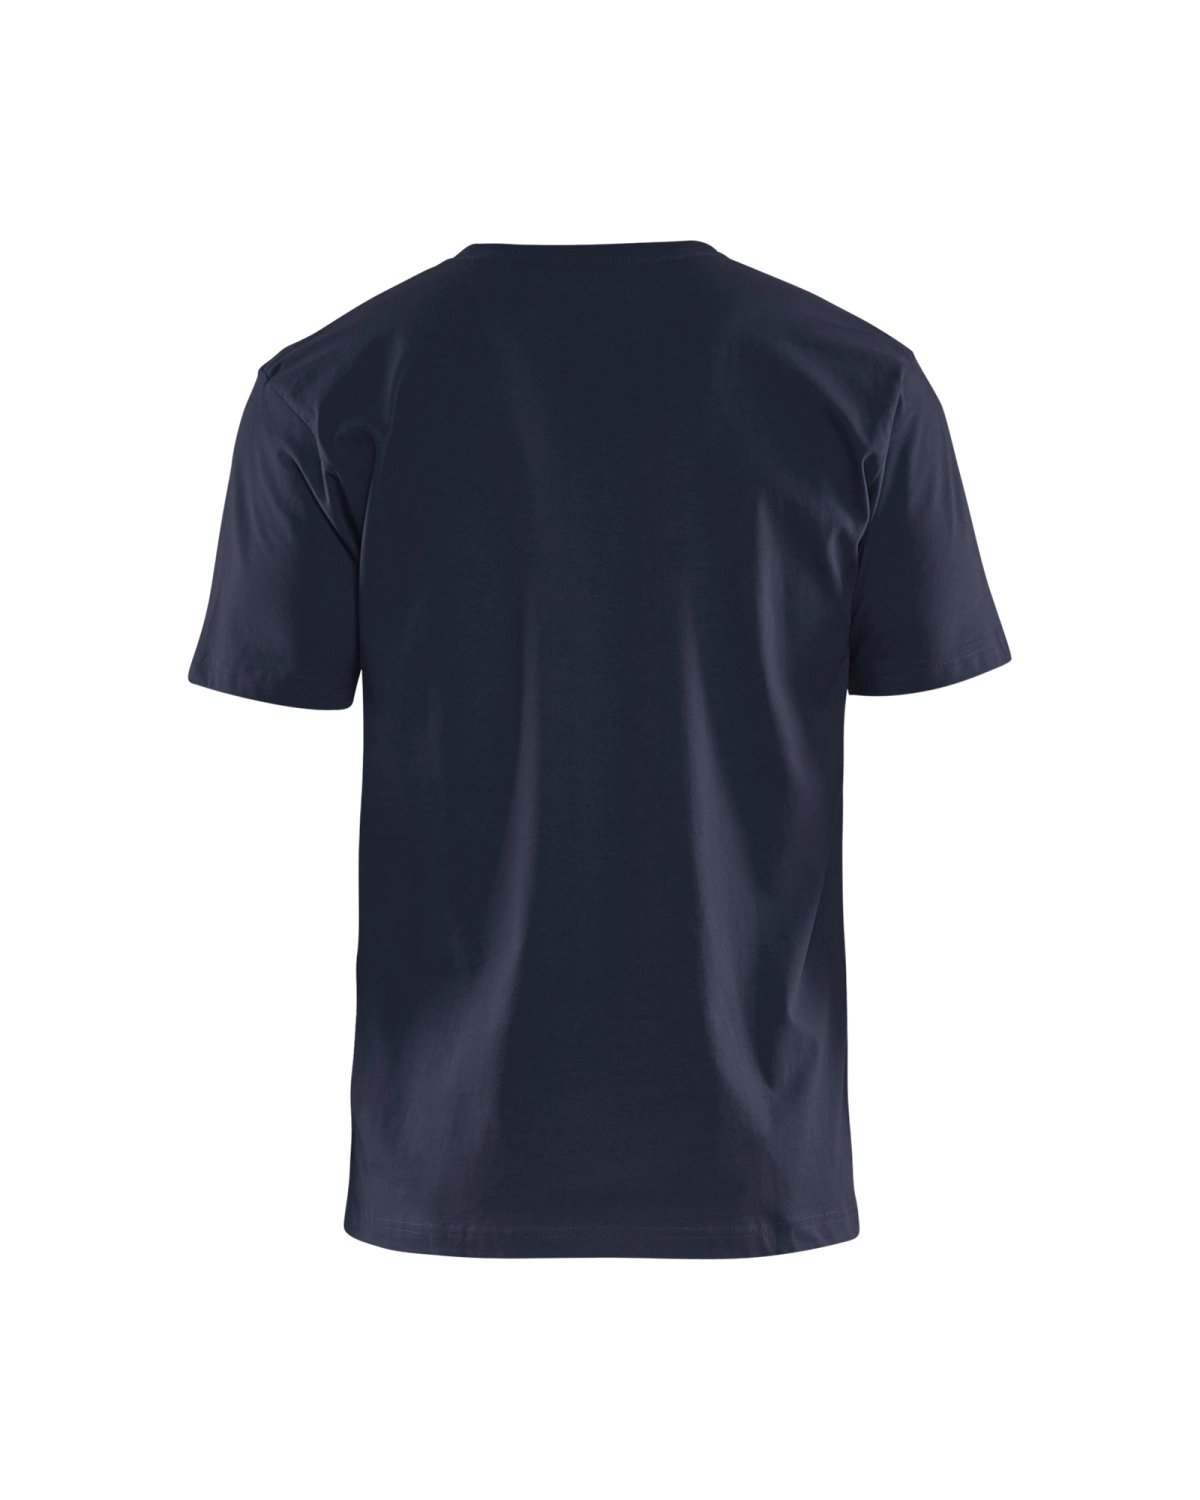 Blåkläder 3300 T-Shirt - donker marineblauw - XL